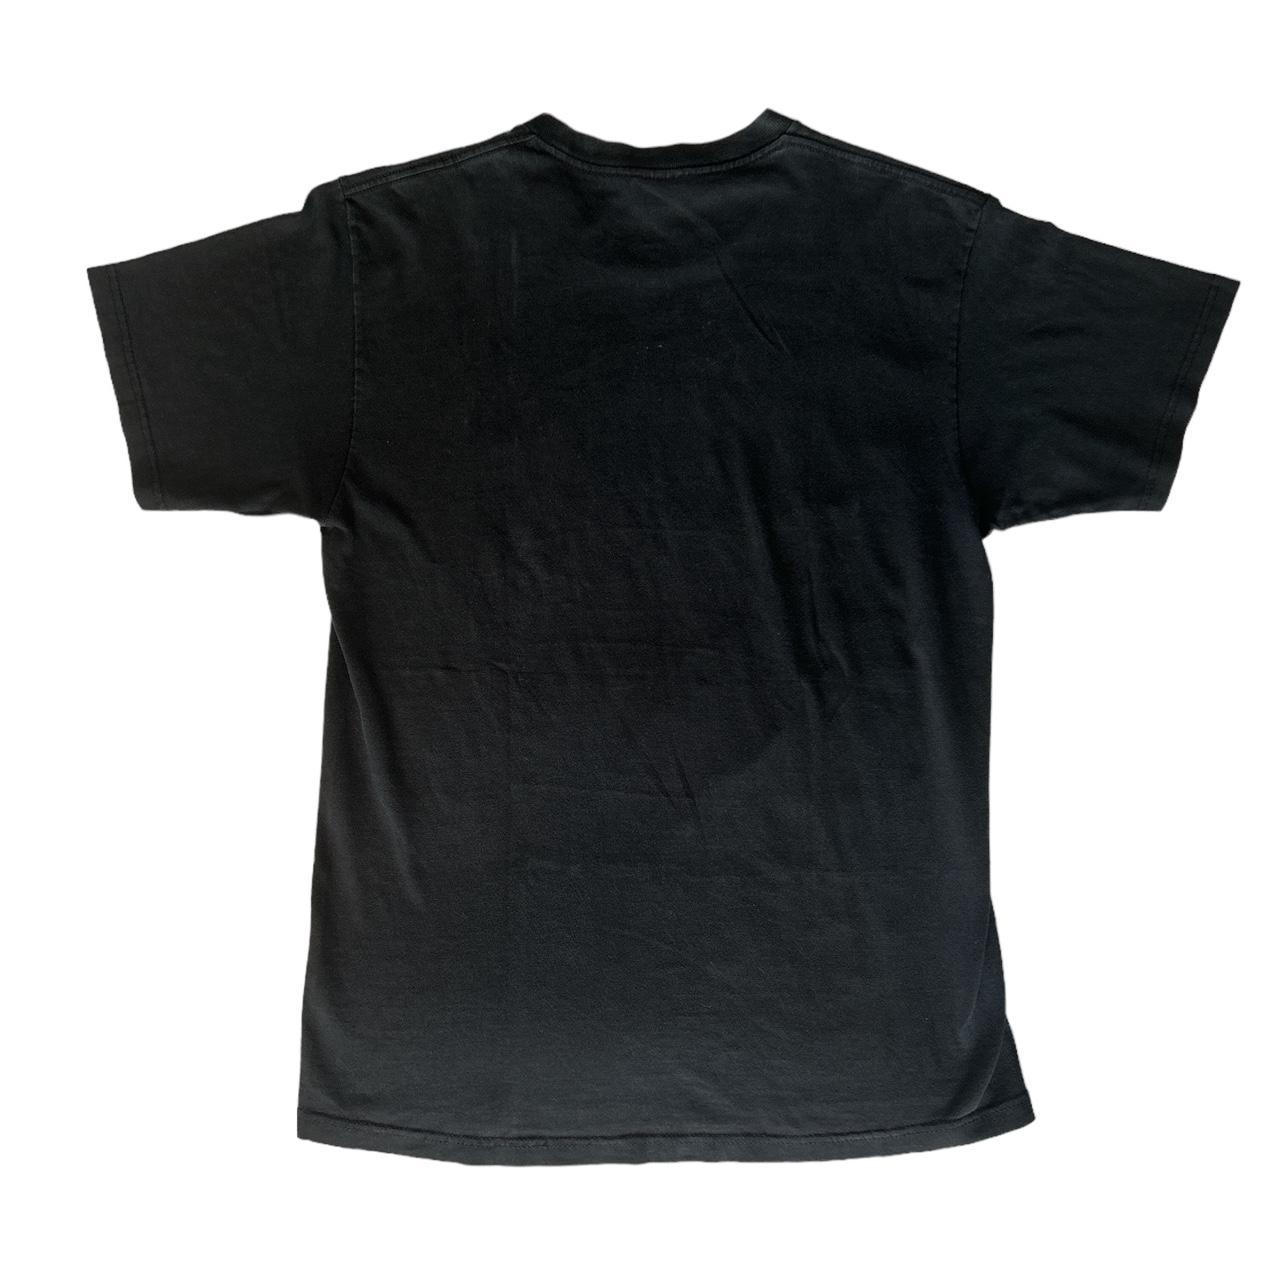 Stussy T Shirt Basil Wolverton collab Size... - Depop